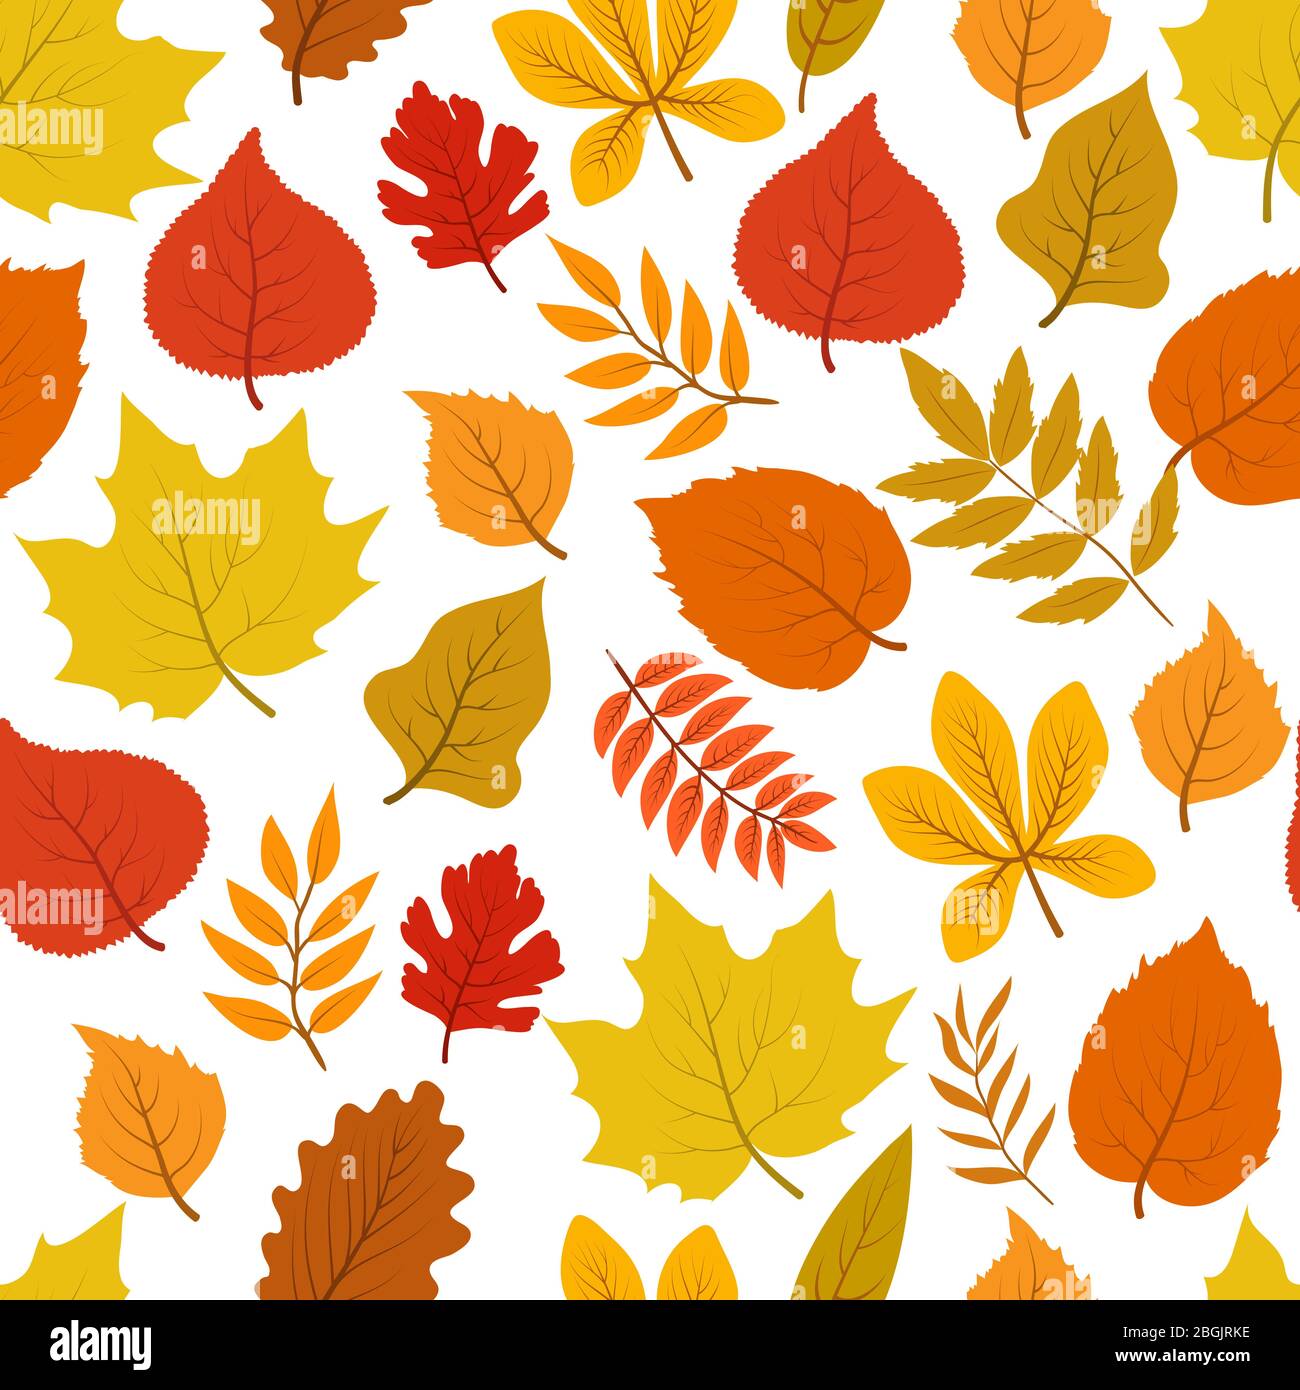 Wald goldenen Herbst Blätter nahtlose Vektor herbstliche Muster. Hintergrund natürliche goldene Blätter, Natur Blatt Illustration Stock Vektor